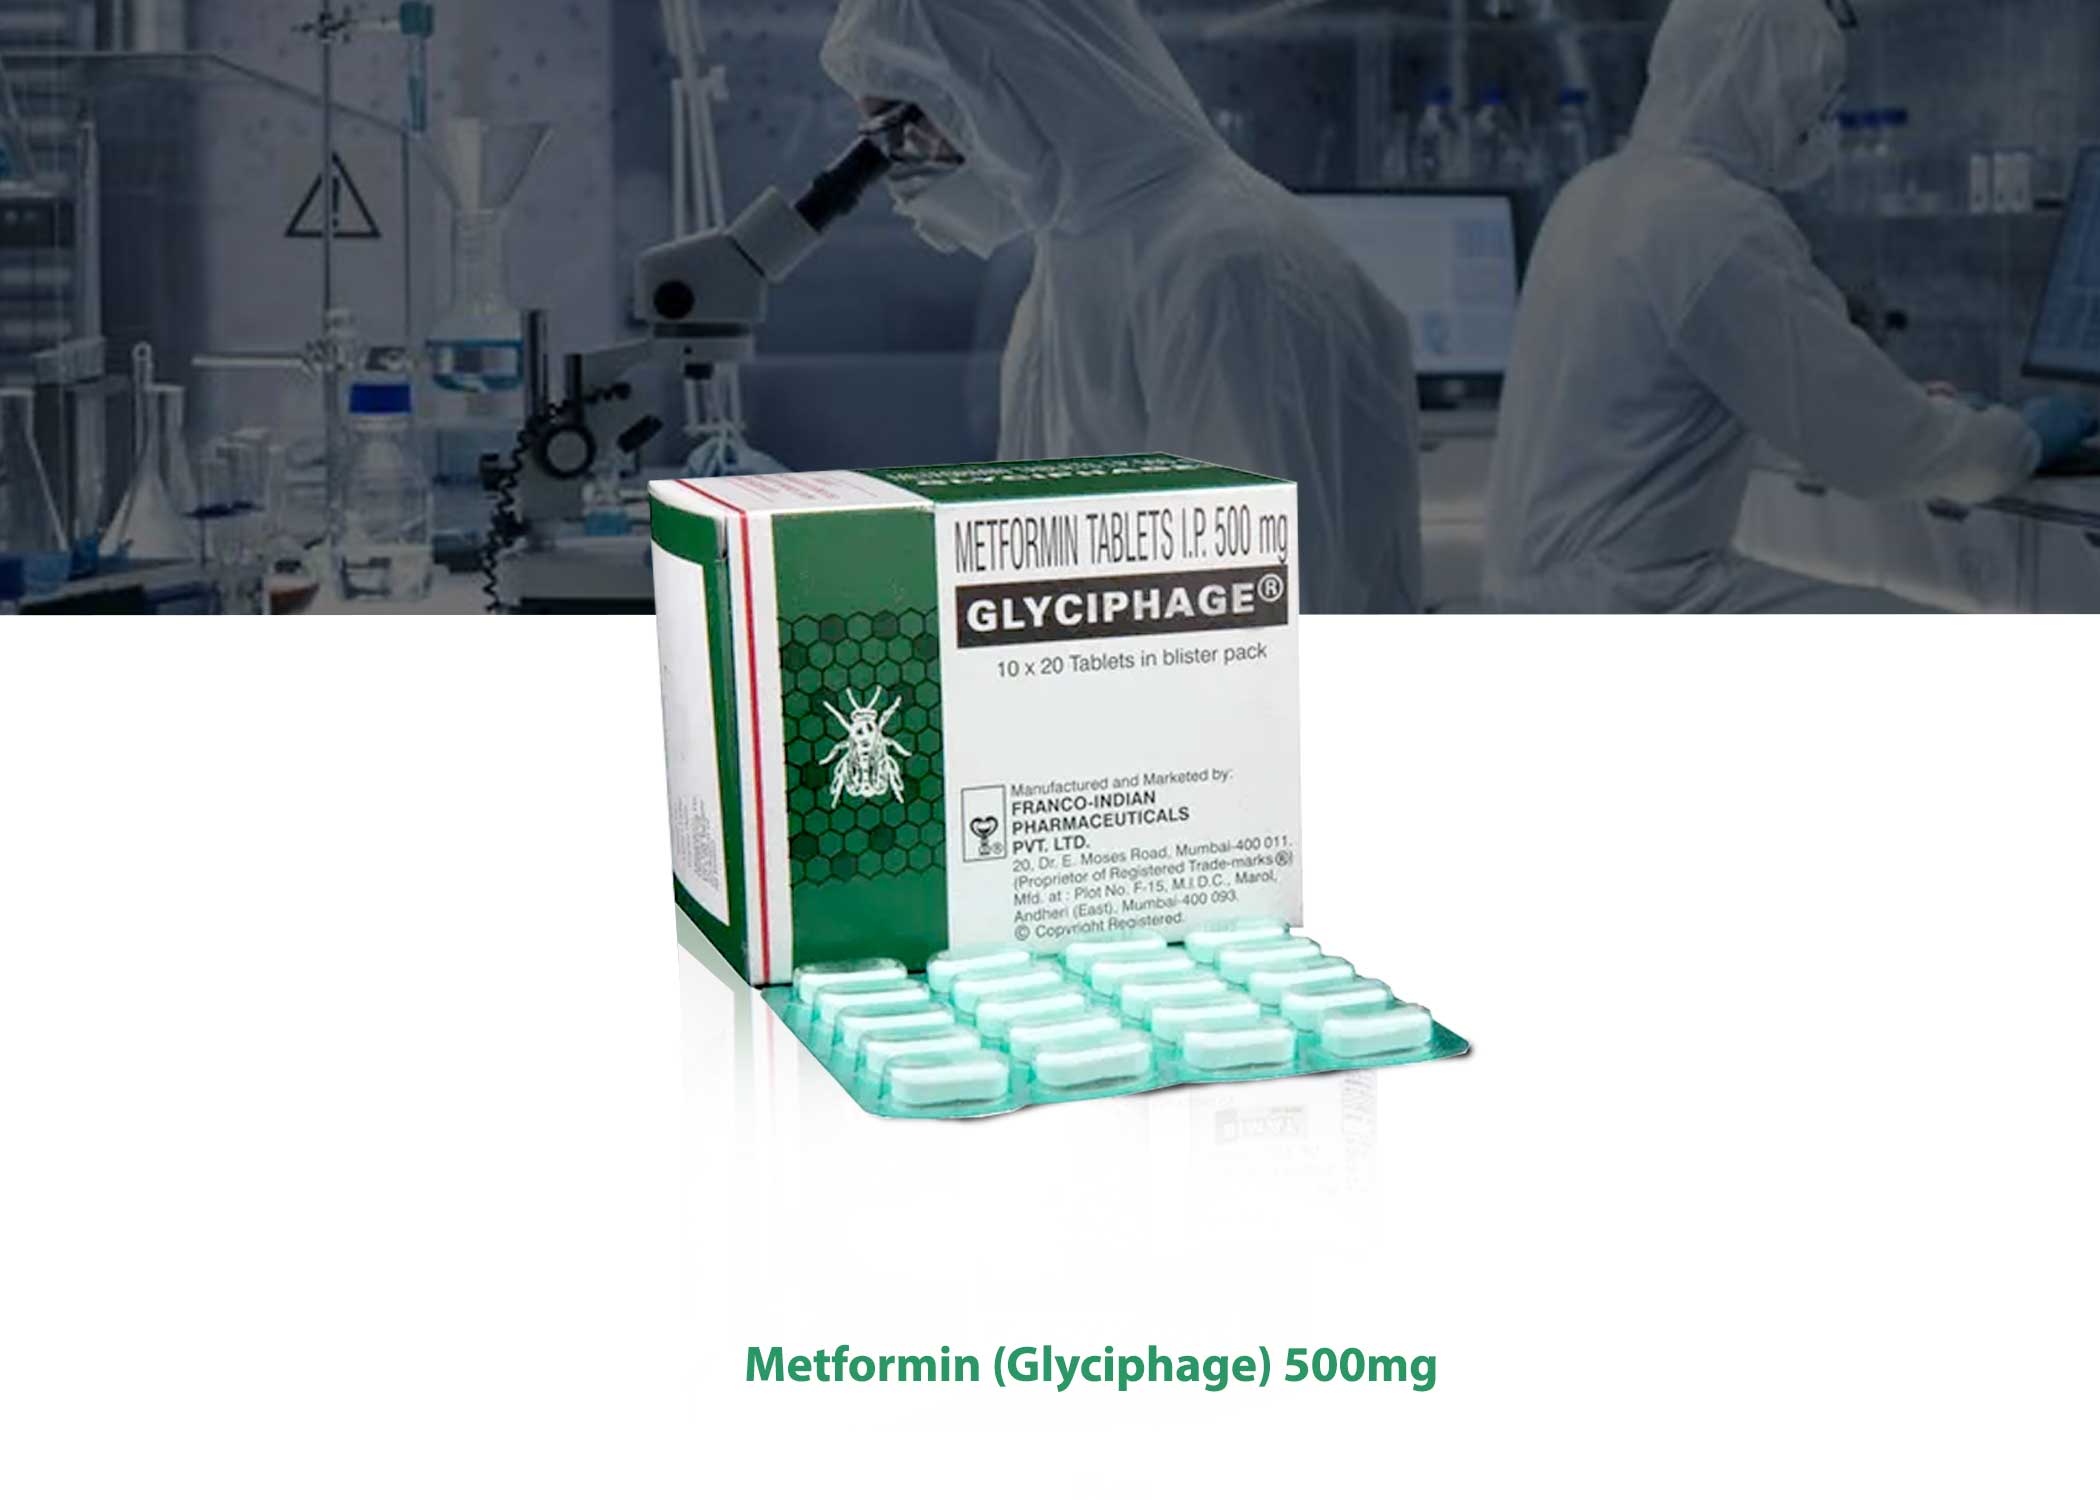 Metformin Glyciphage 500mg